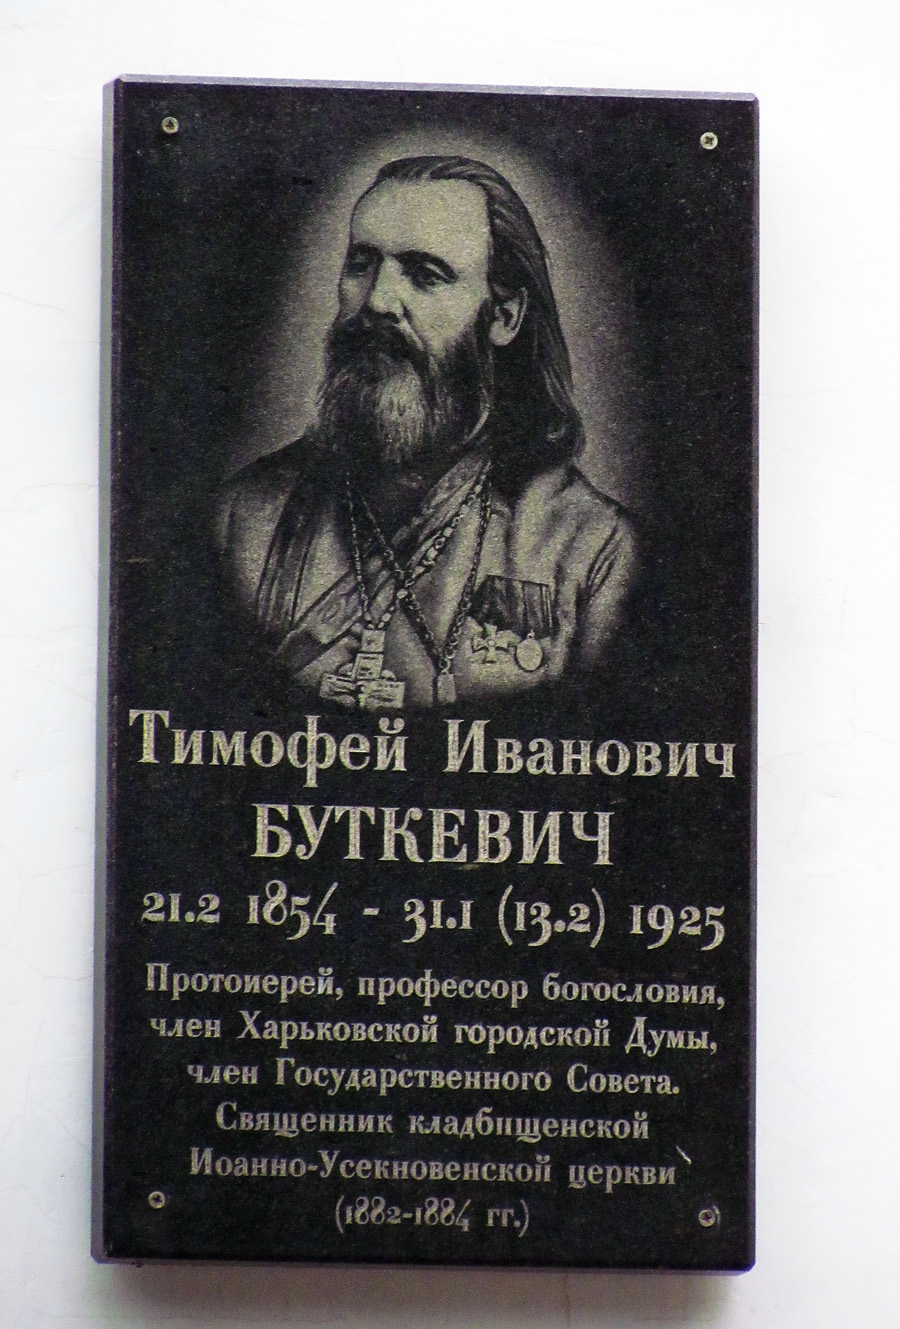 Kharkov, Улица Алчевских, 50. Kharkov — Memorial plaques